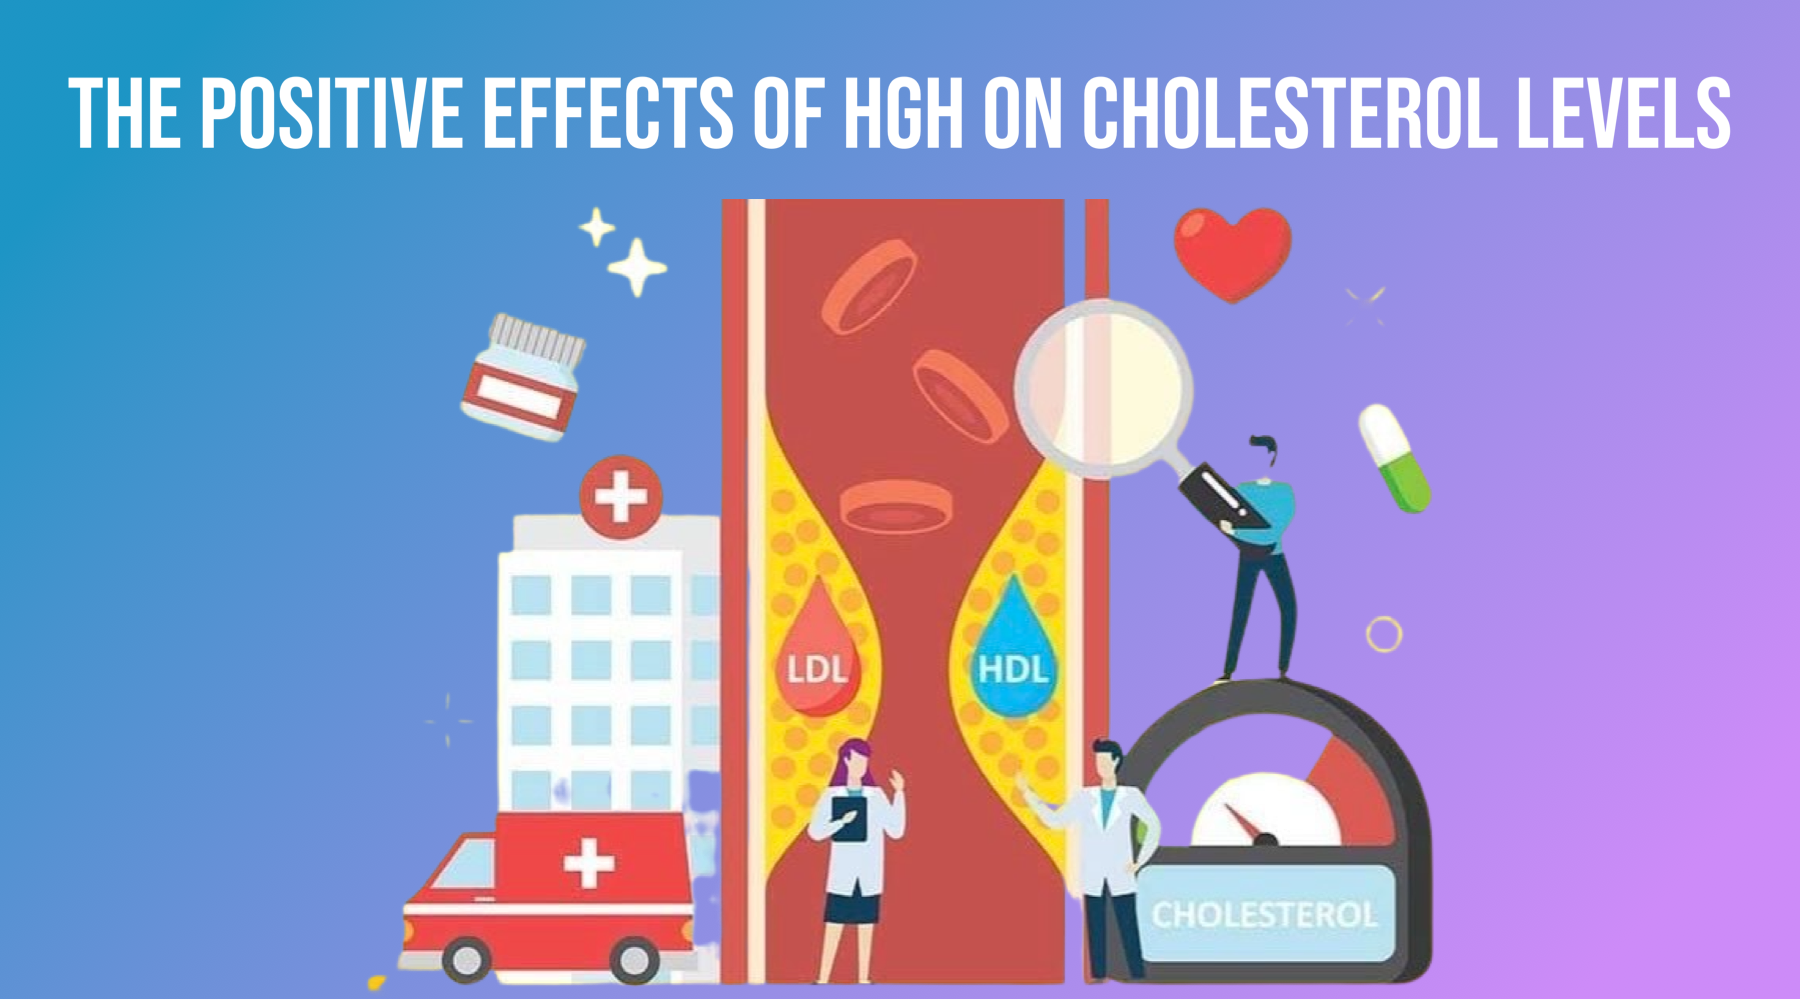 L'effetti pusitivi di HGH nantu à i livelli di colesterol